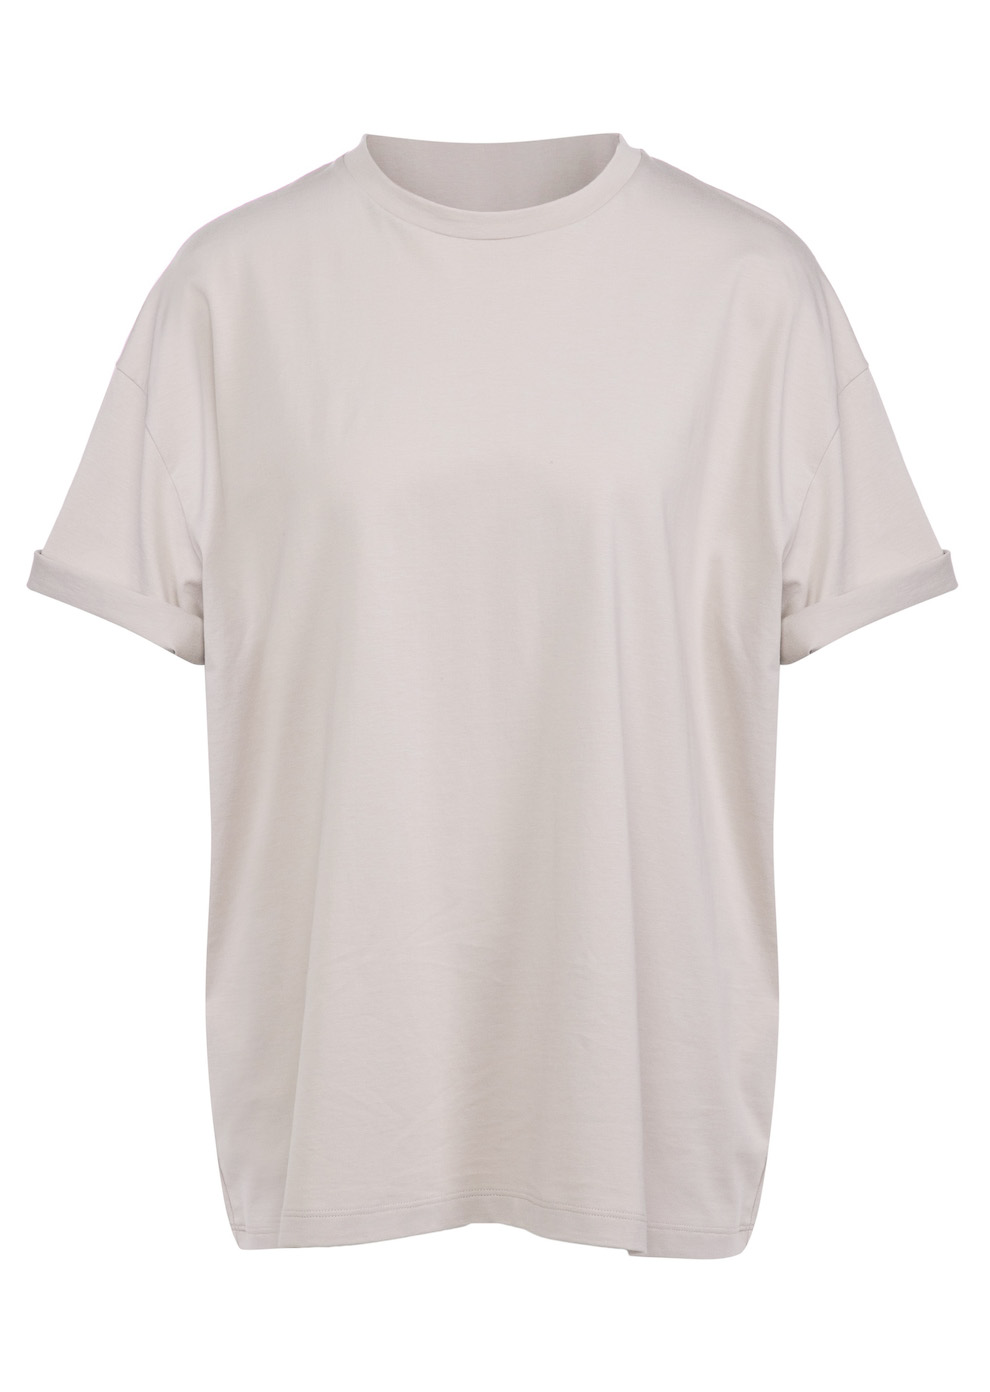 Базовая женская футболка (3703JW-8501-JK007)